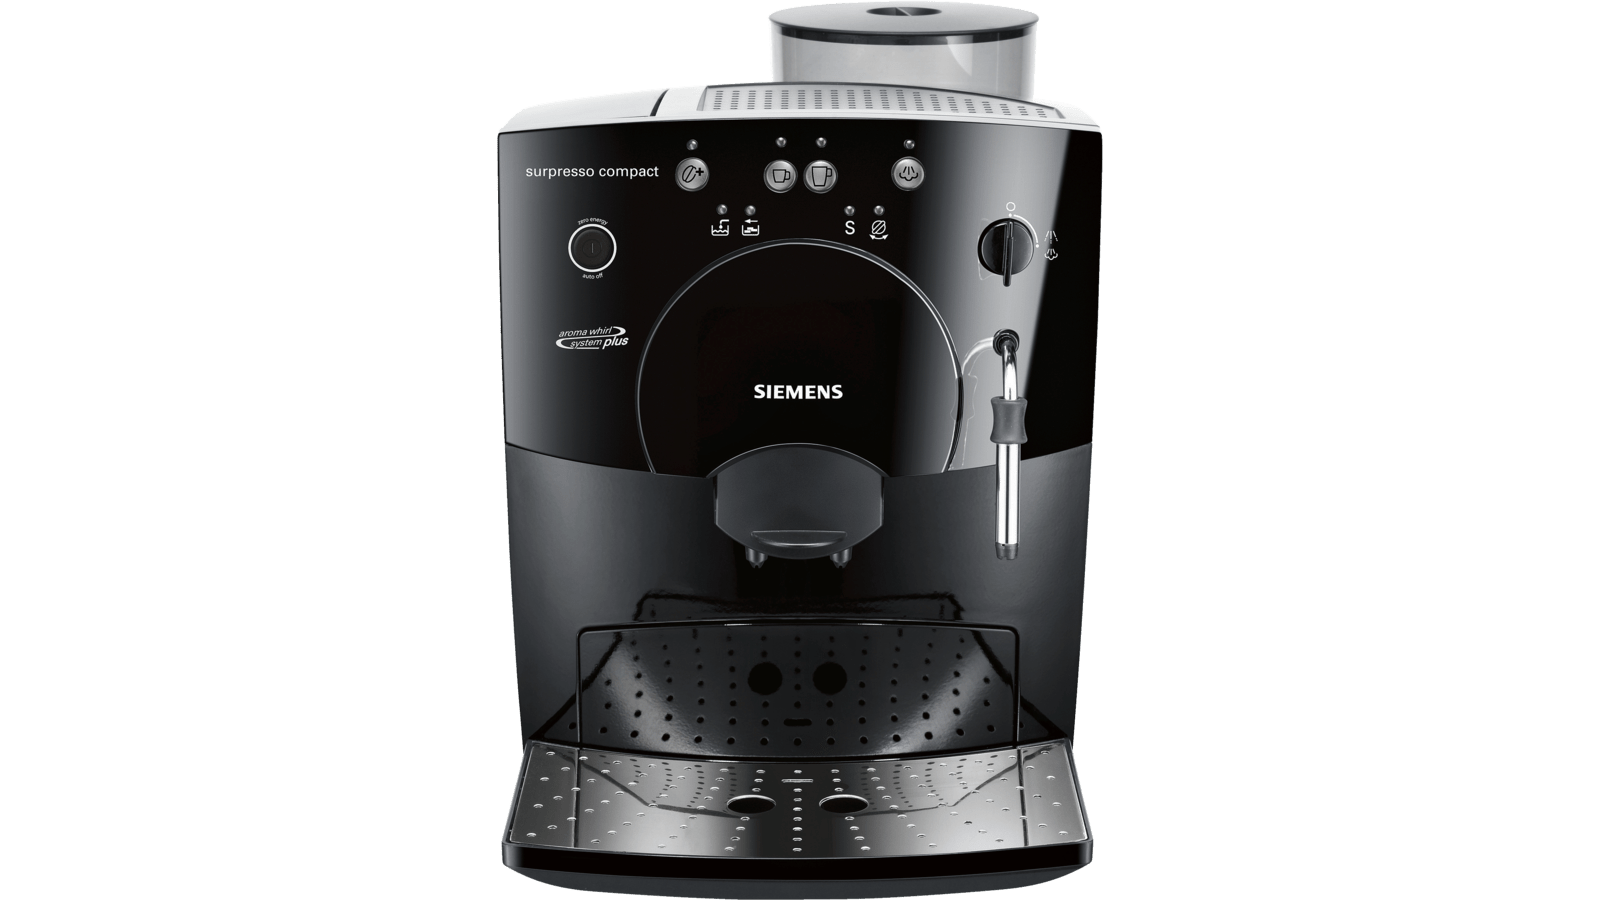 Almægtig Om indstilling Titicacasøen TK53009 surpresso compact | Siemens Hvidevarer DK